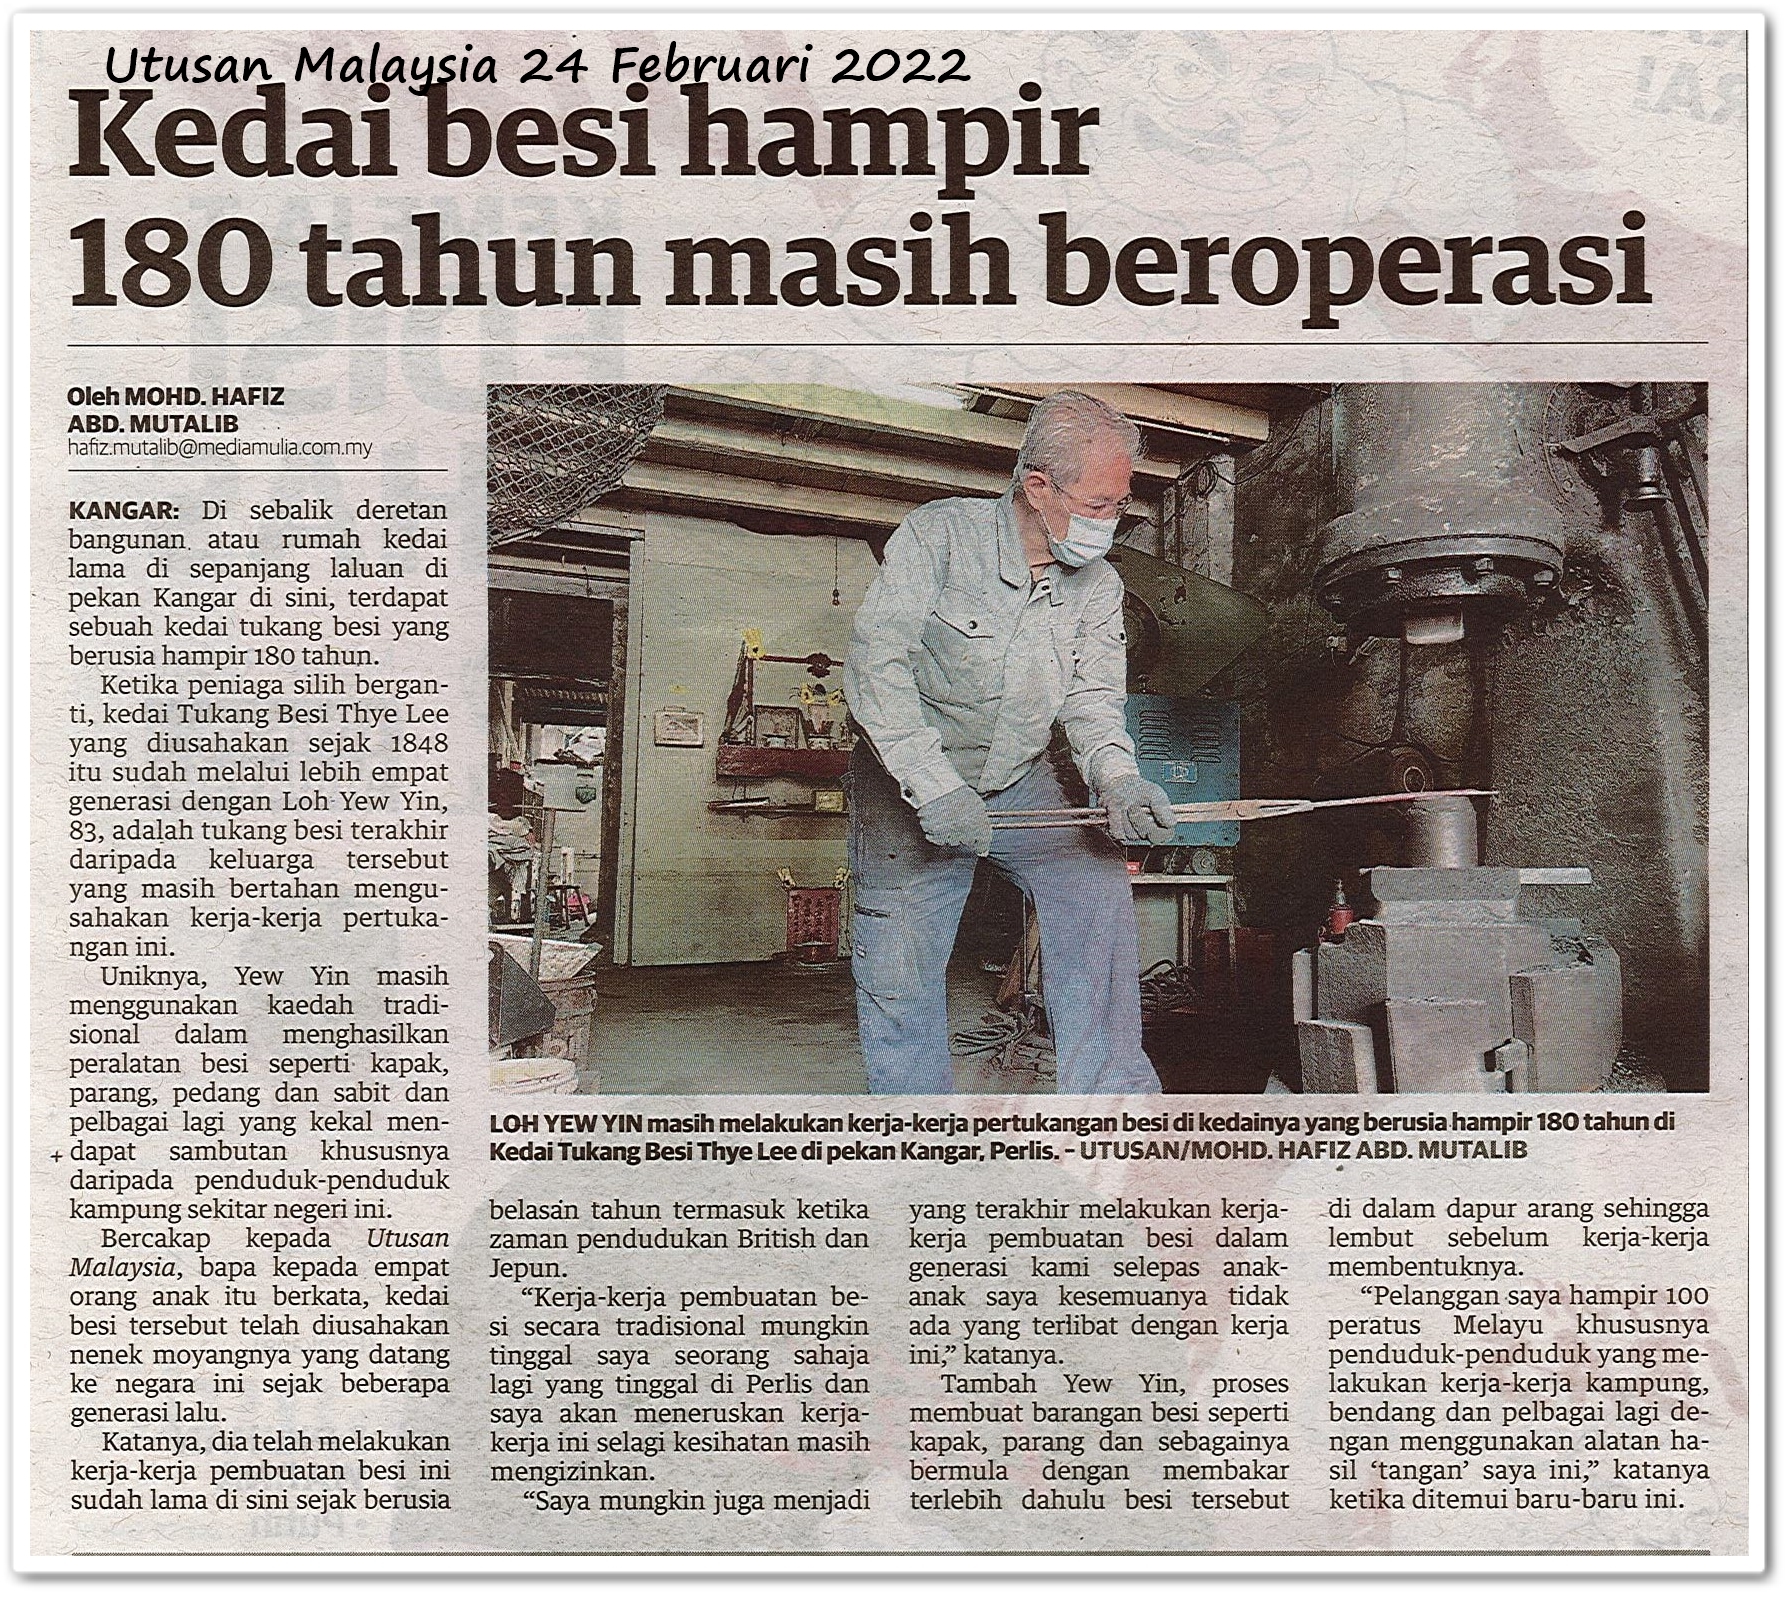 Kedai besi hampir 180 tahun masih beroperasi - Keratan akhbar Utusan Malaysia 24 Februari 2022